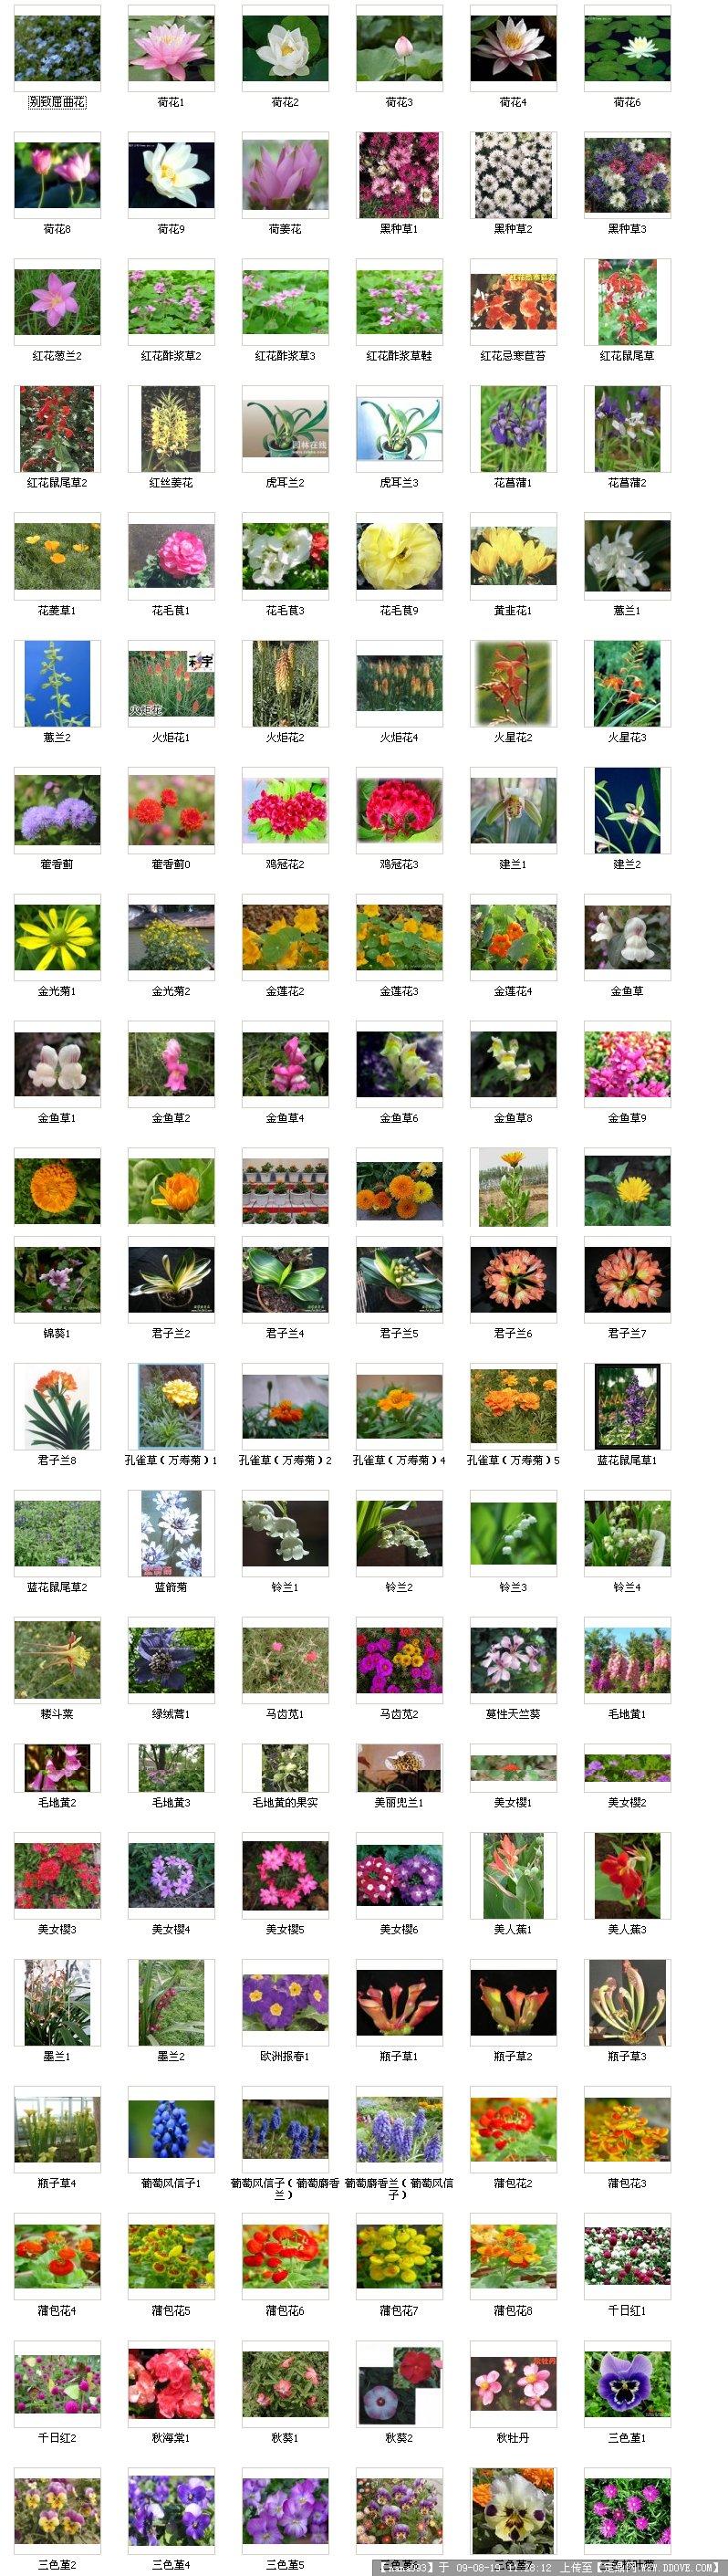 植物名称及图片 花草图片